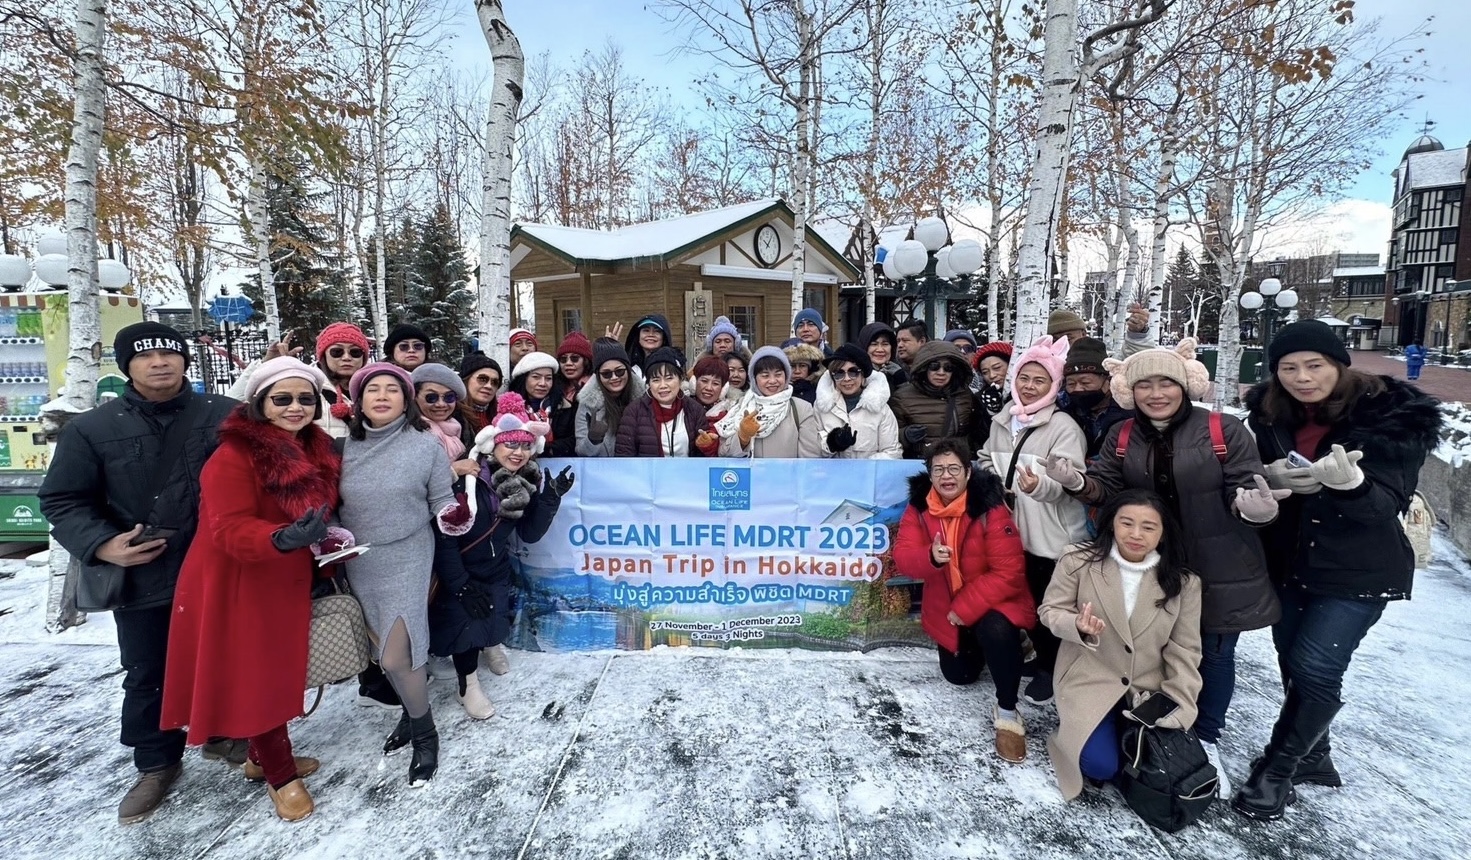 OCEAN LIFE ไทยสมุทร มอบประสบการณ์สุดพิเศษสำหรับที่ปรึกษาประกันชีวิต คุณวุฒิระดับโลก MDRT 2023 ด้วยทริปท่องเที่ยวญี่ปุ่น-ฮอกไกโด